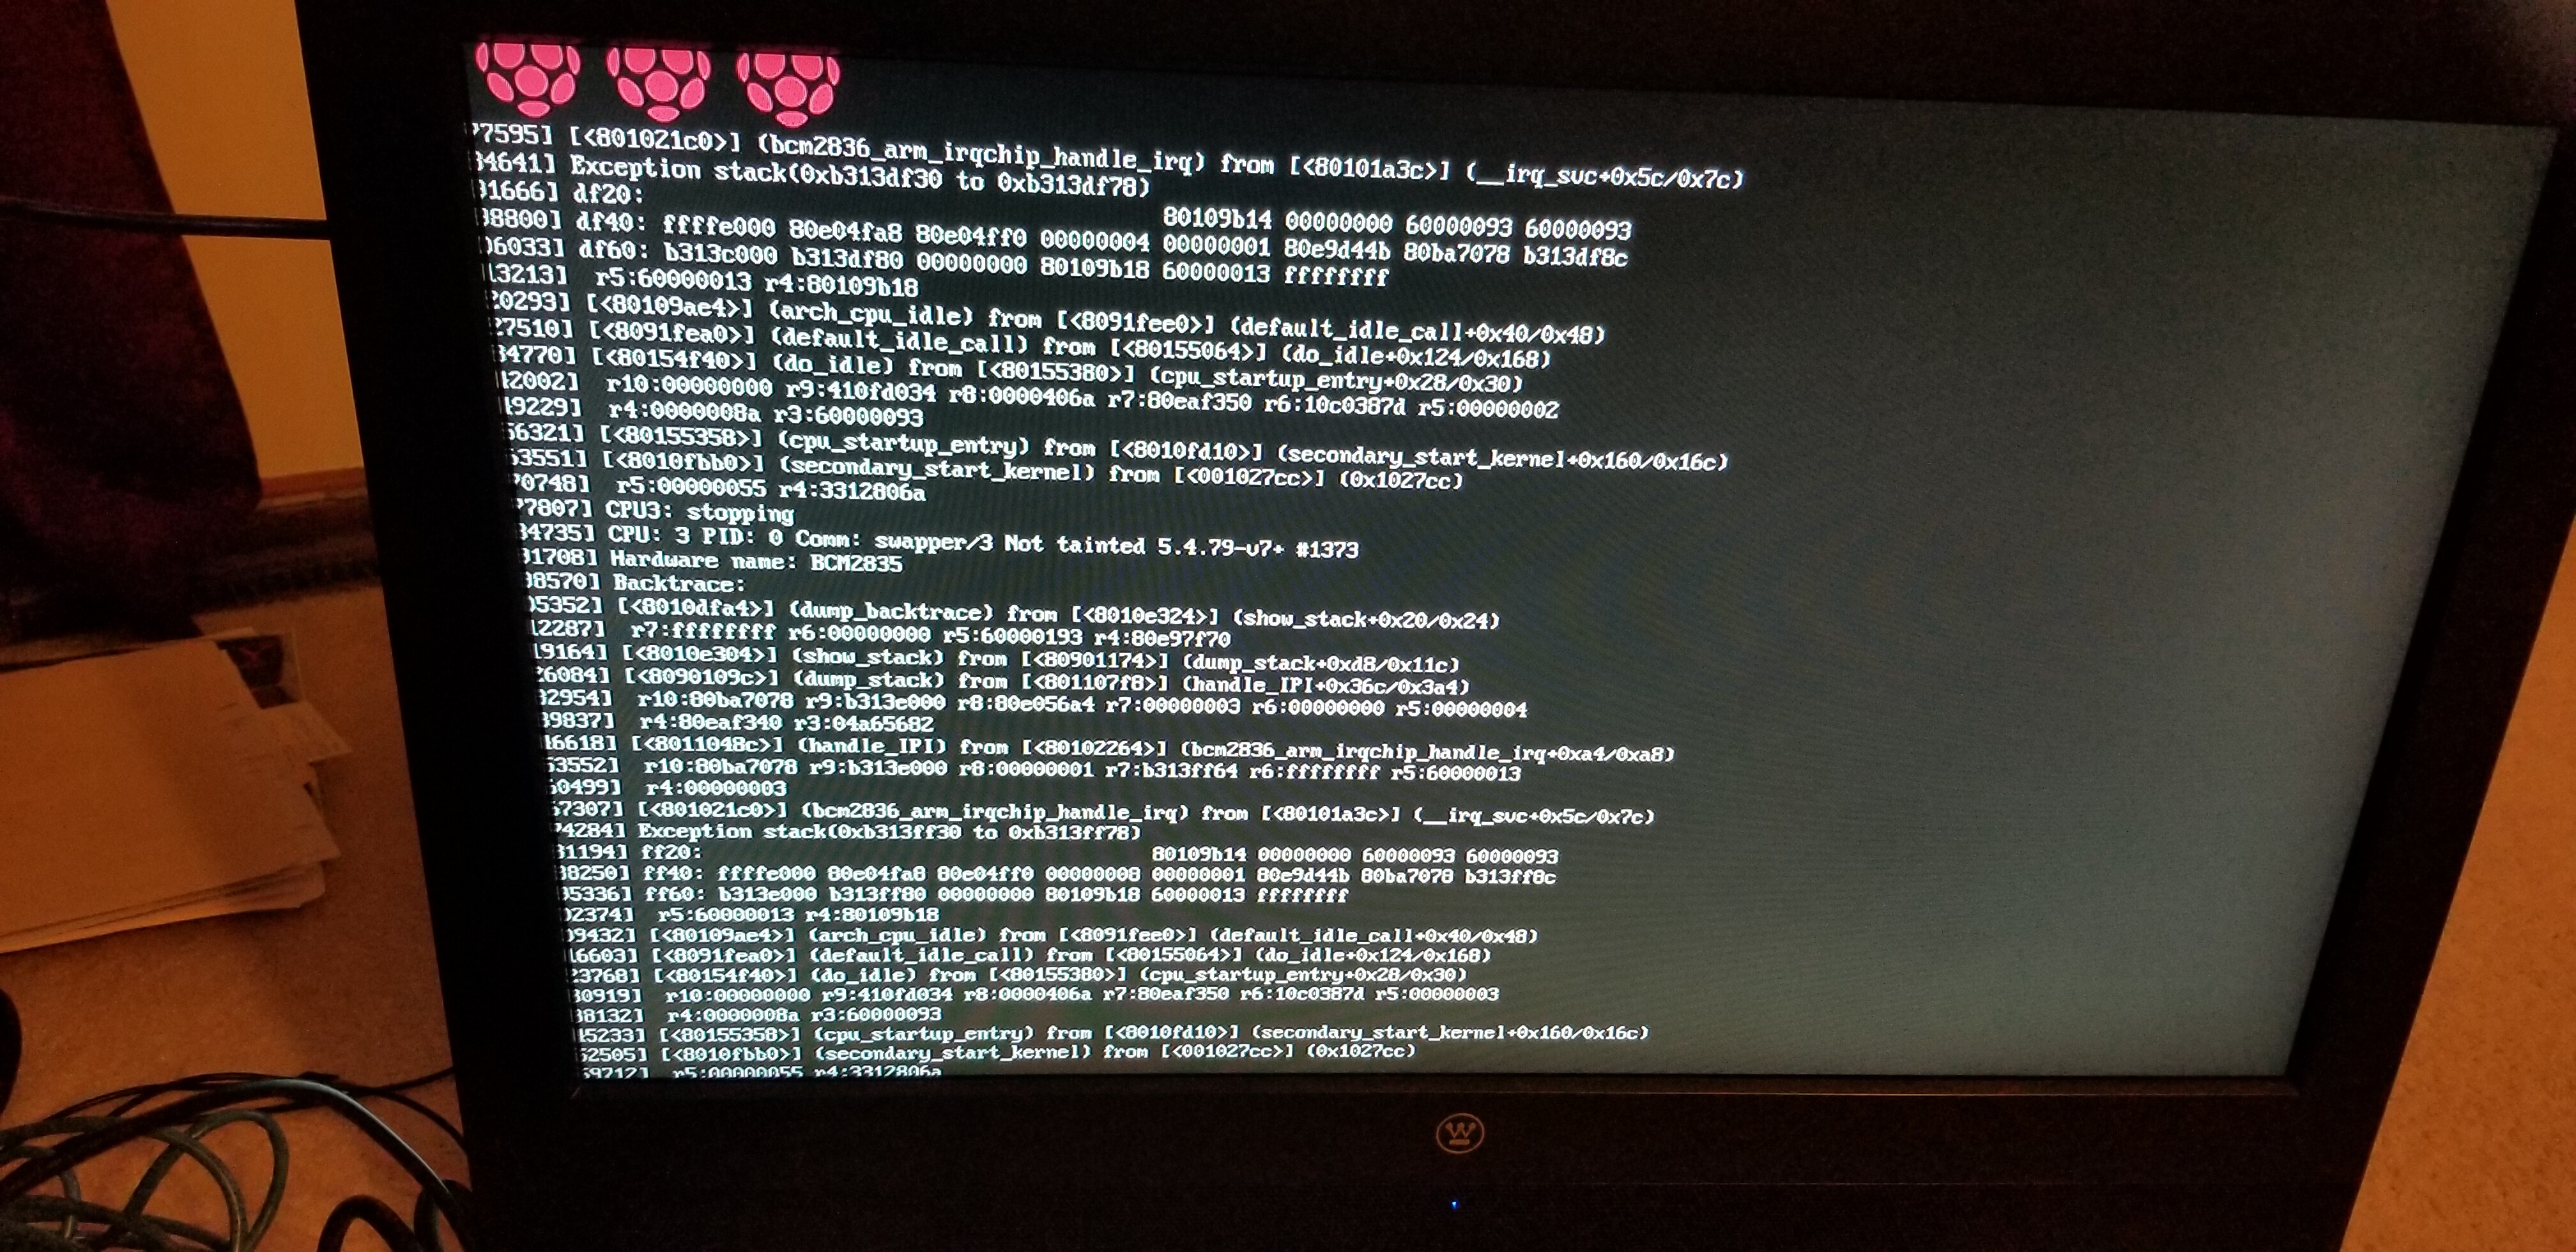 boot - I get error while installing Raspbian - Raspberry Pi Stack